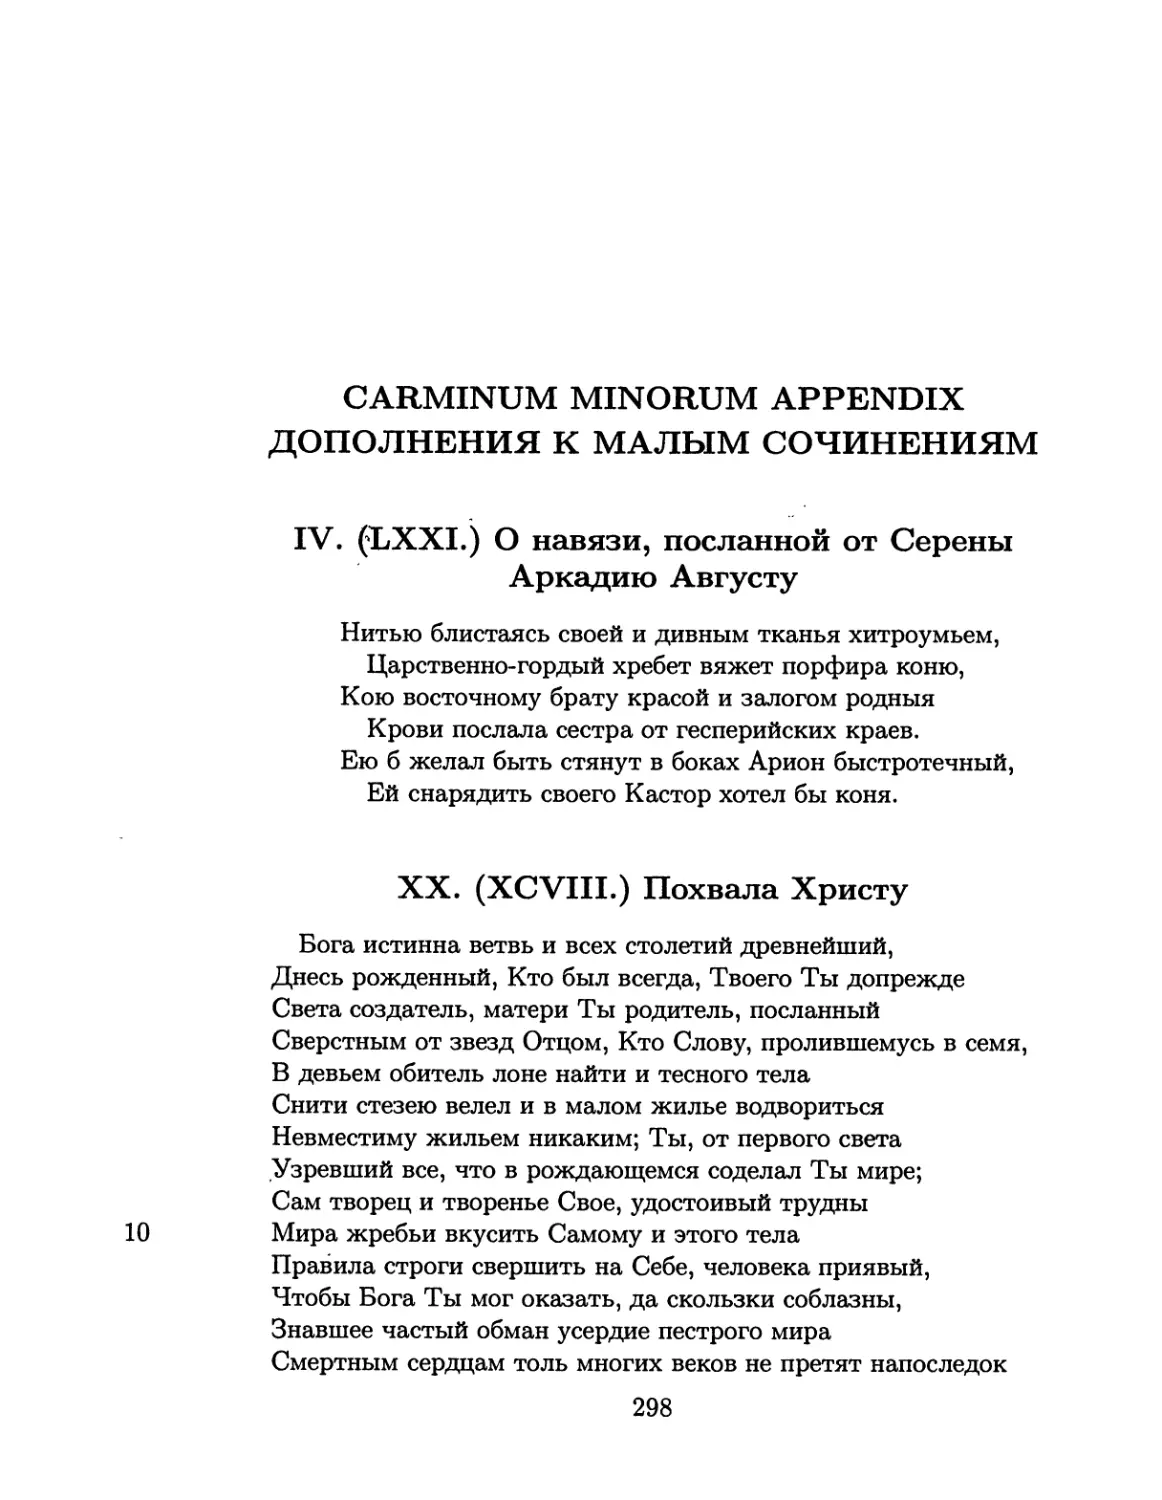 Carminum minorum appendix